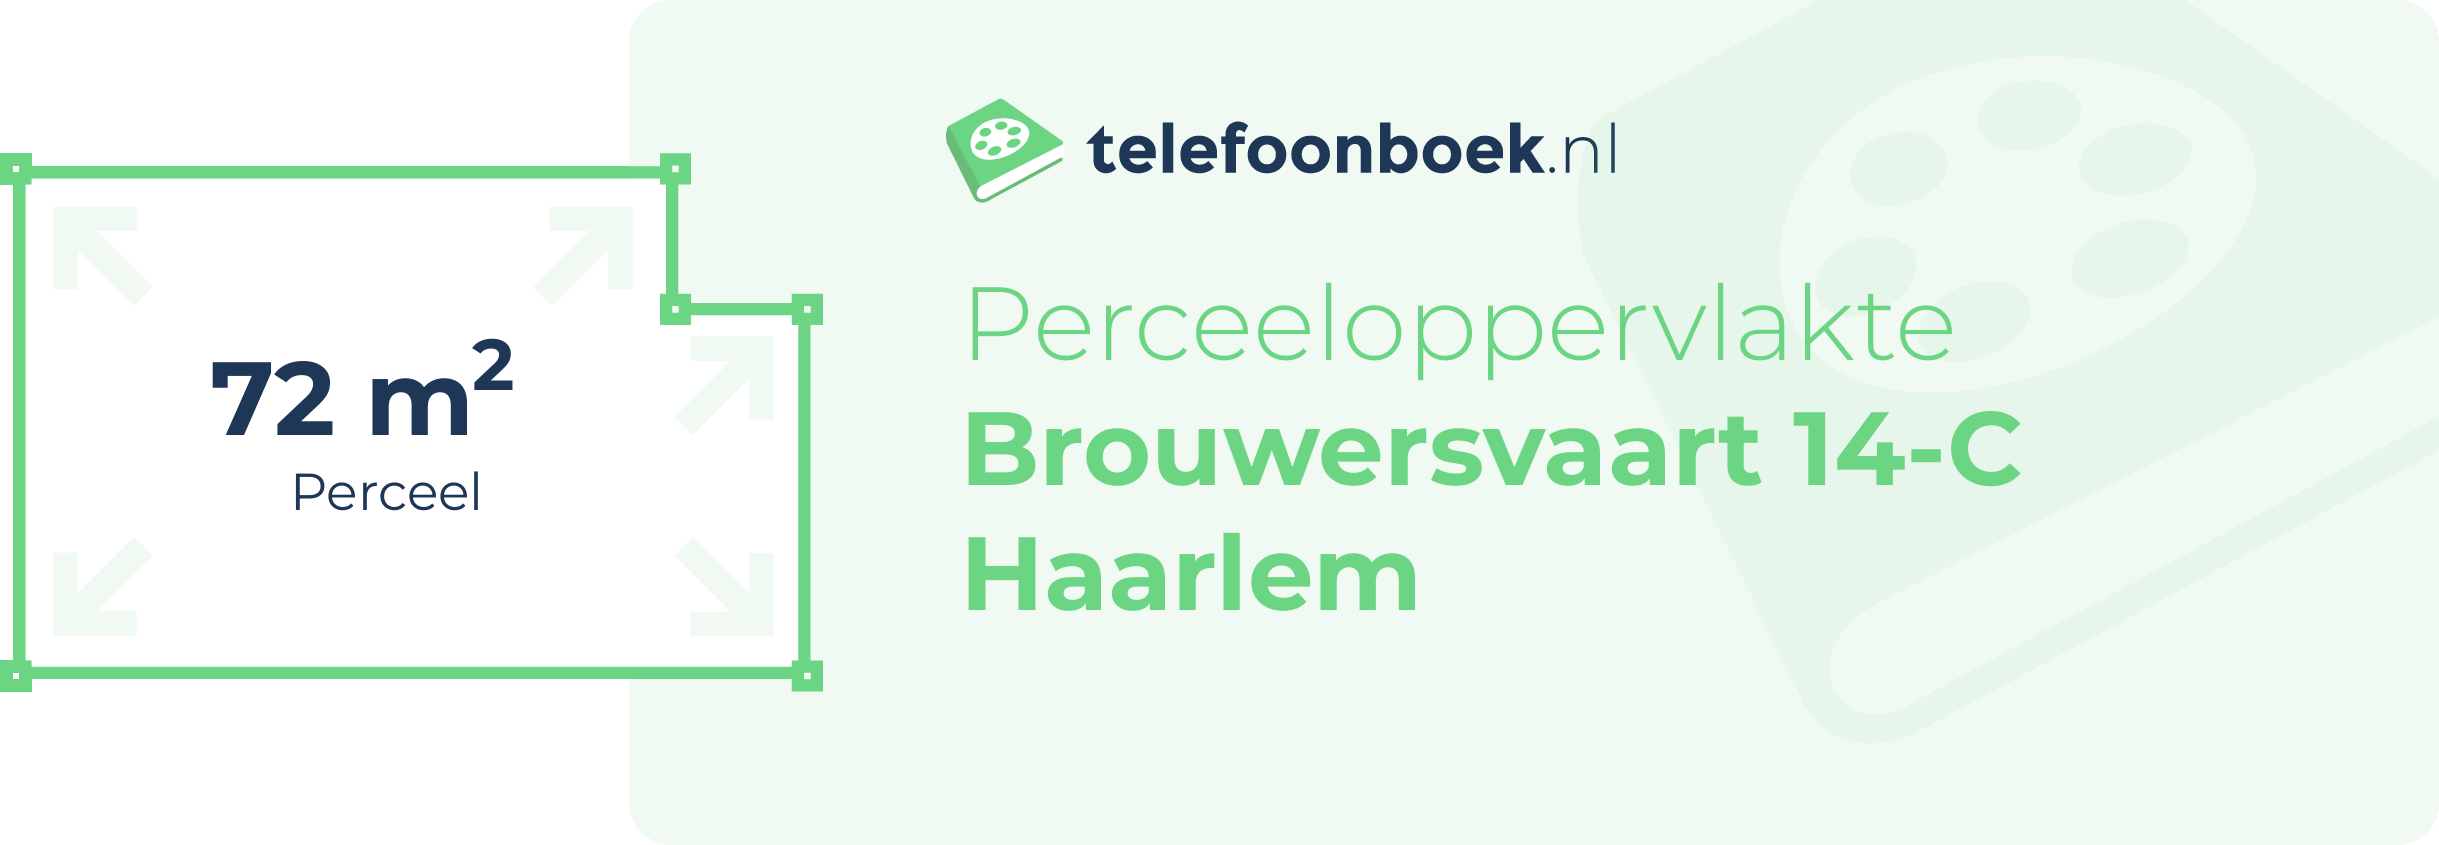 Perceeloppervlakte Brouwersvaart 14-C Haarlem